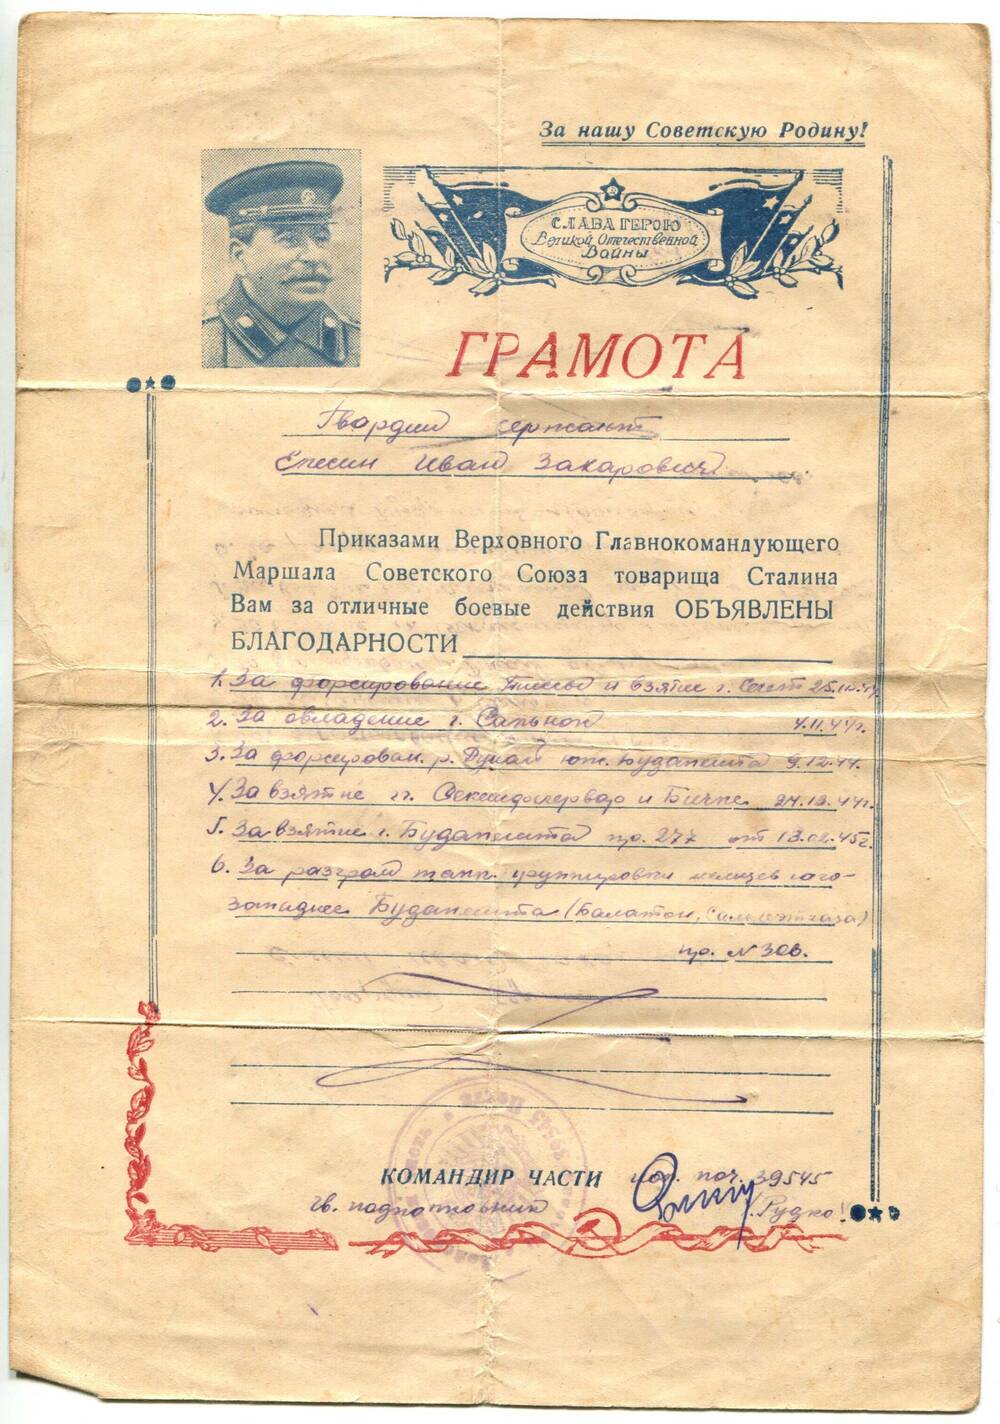 Грамота Елесину Ивану Захаровичу об объявлении благодарностей выдана командиром войсковой части 39545